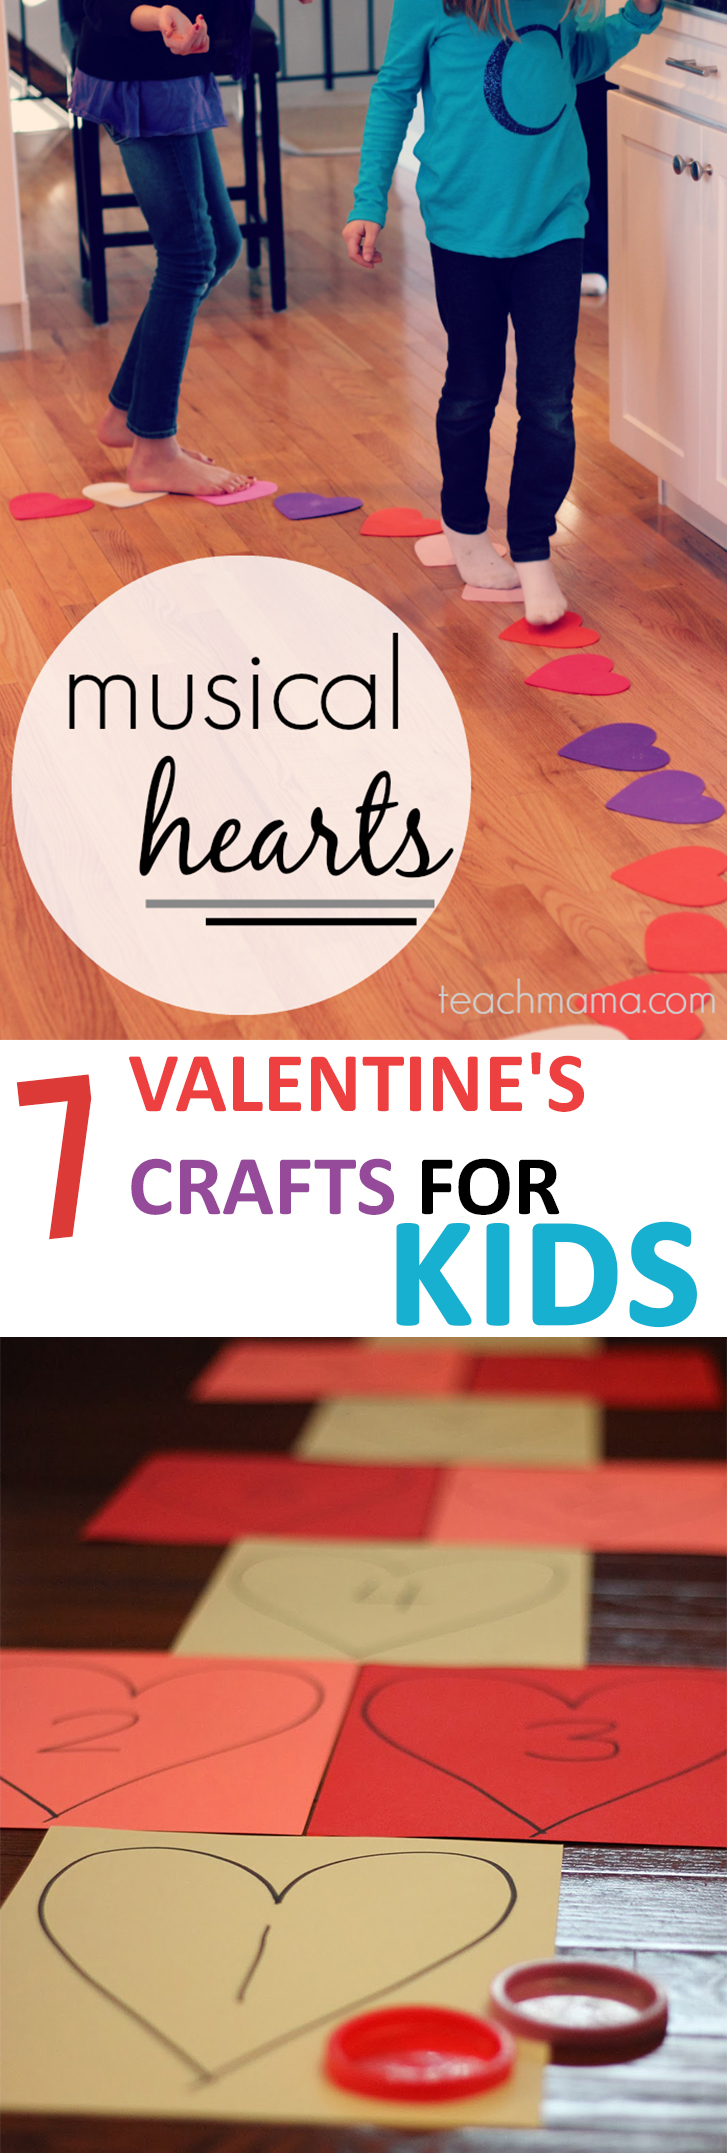 7 Valentine's Crafts for Kids